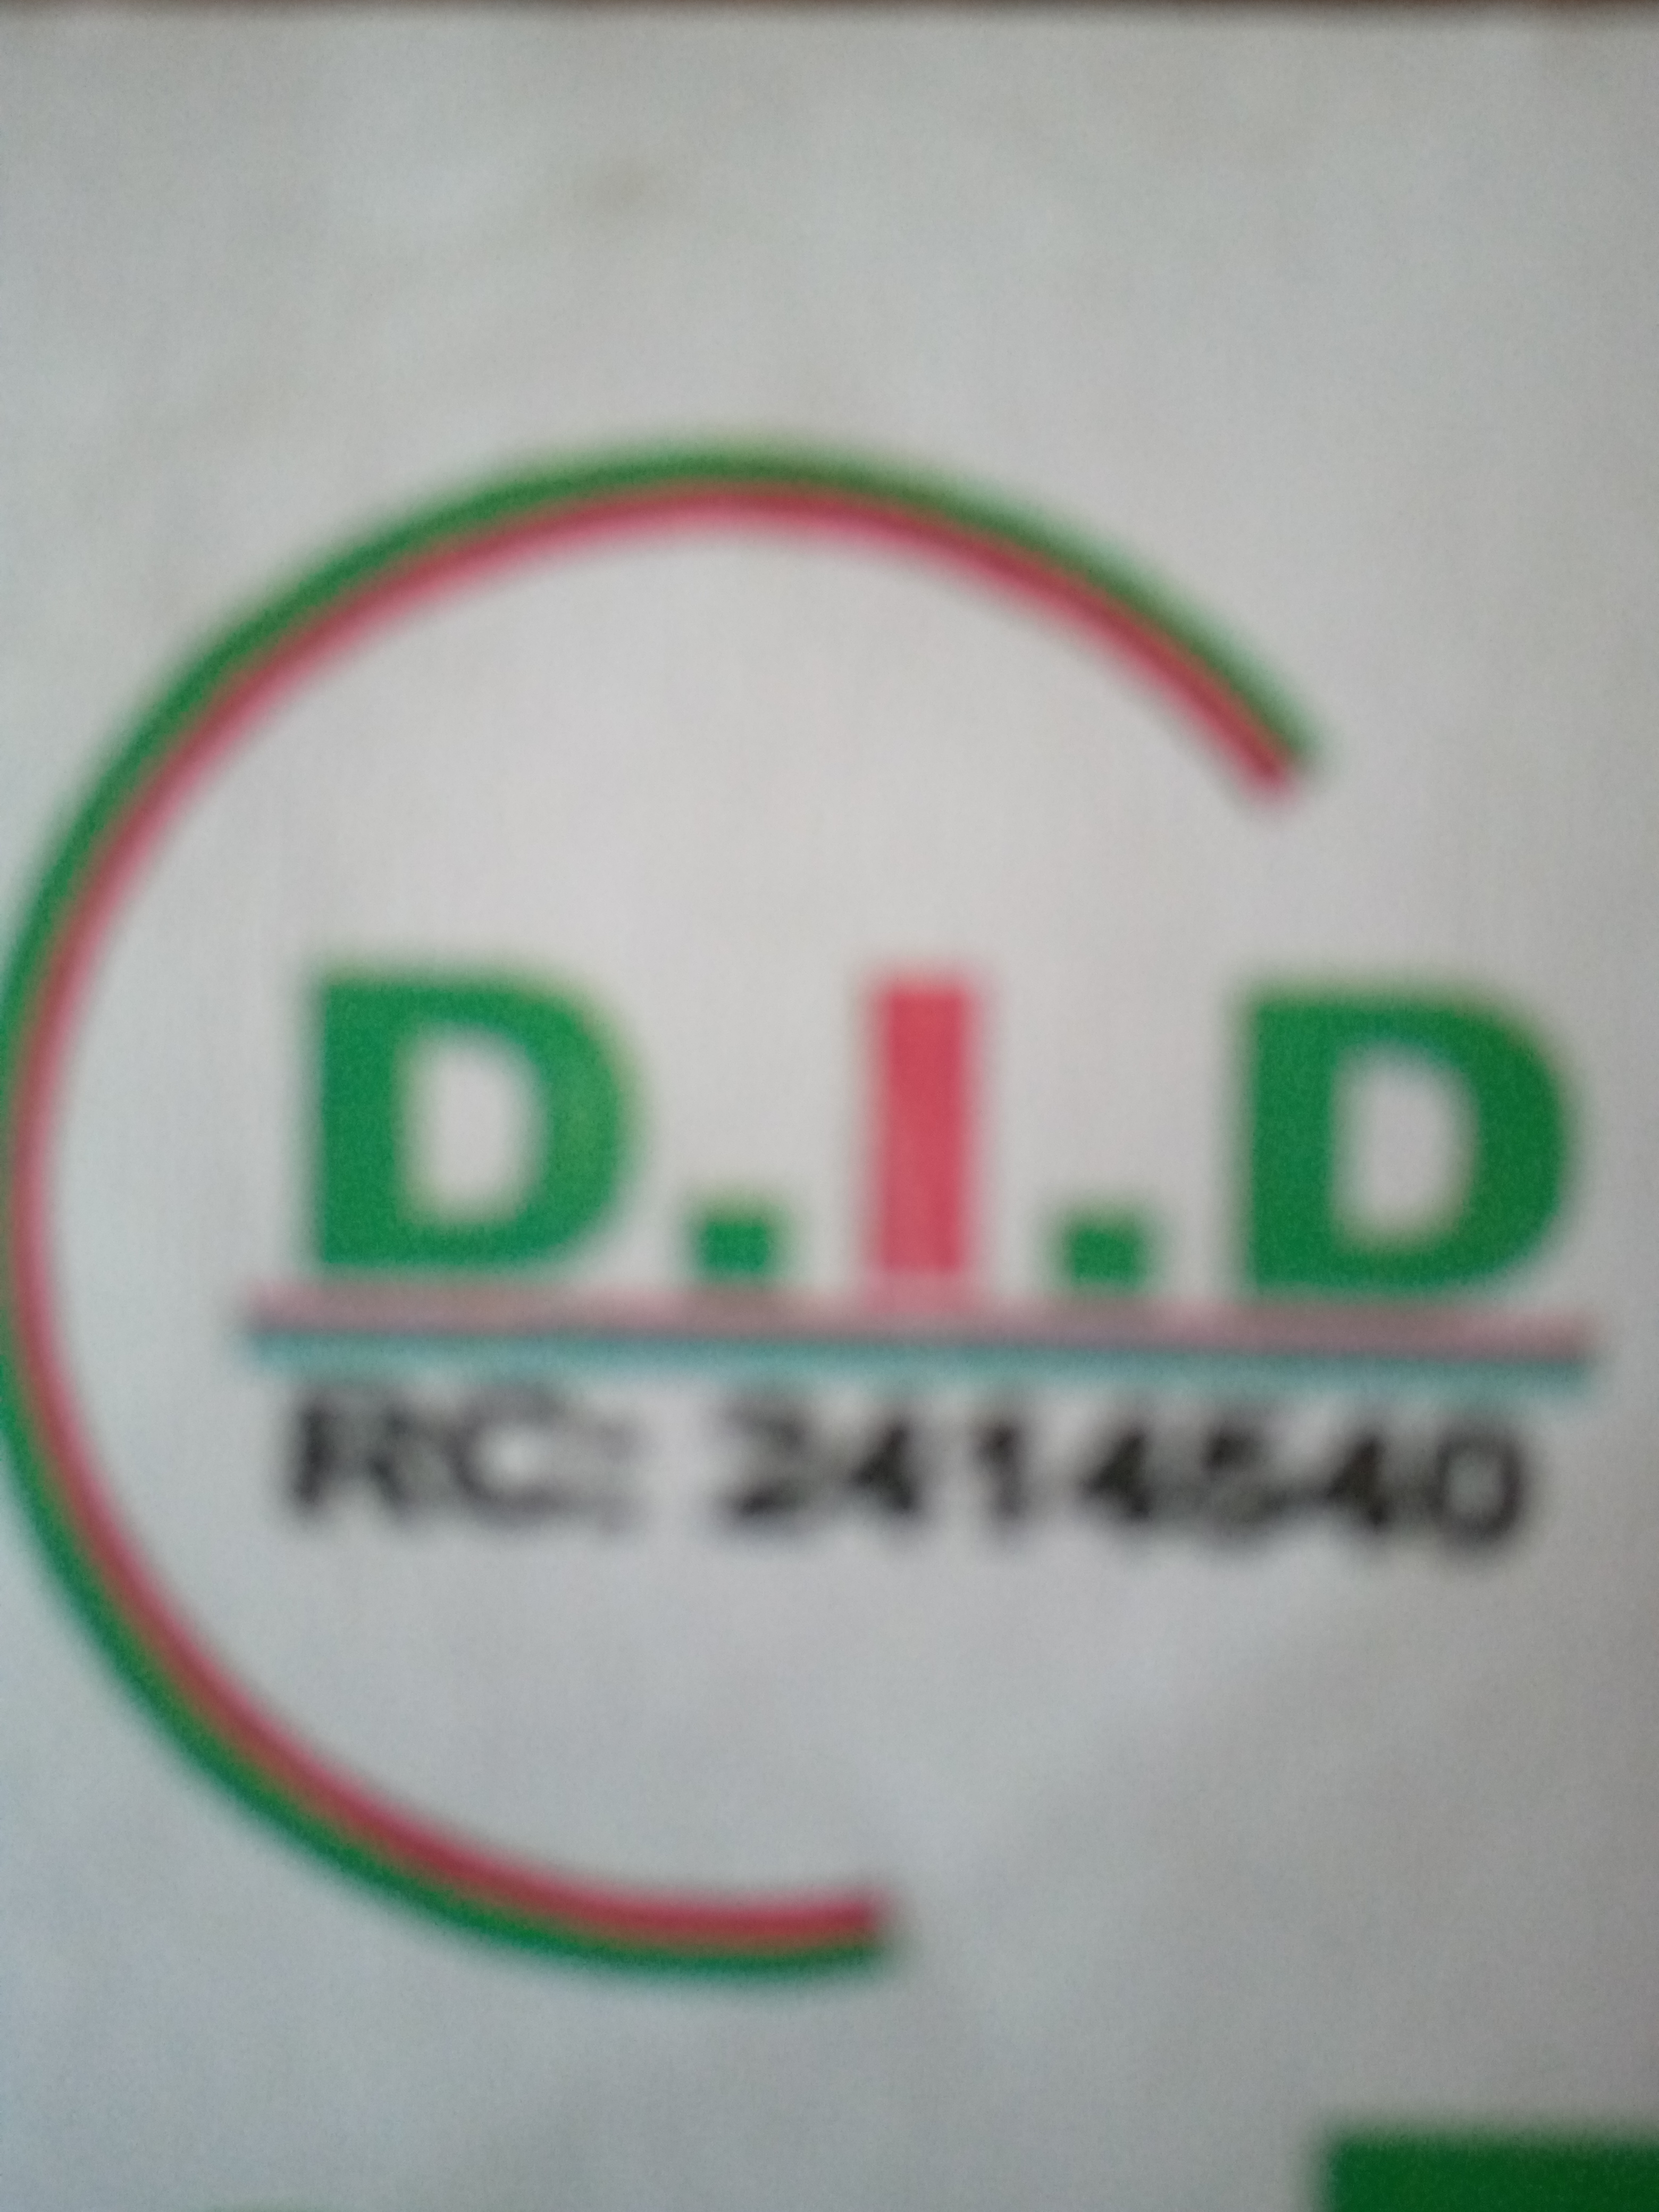 Da-did environmental services provider